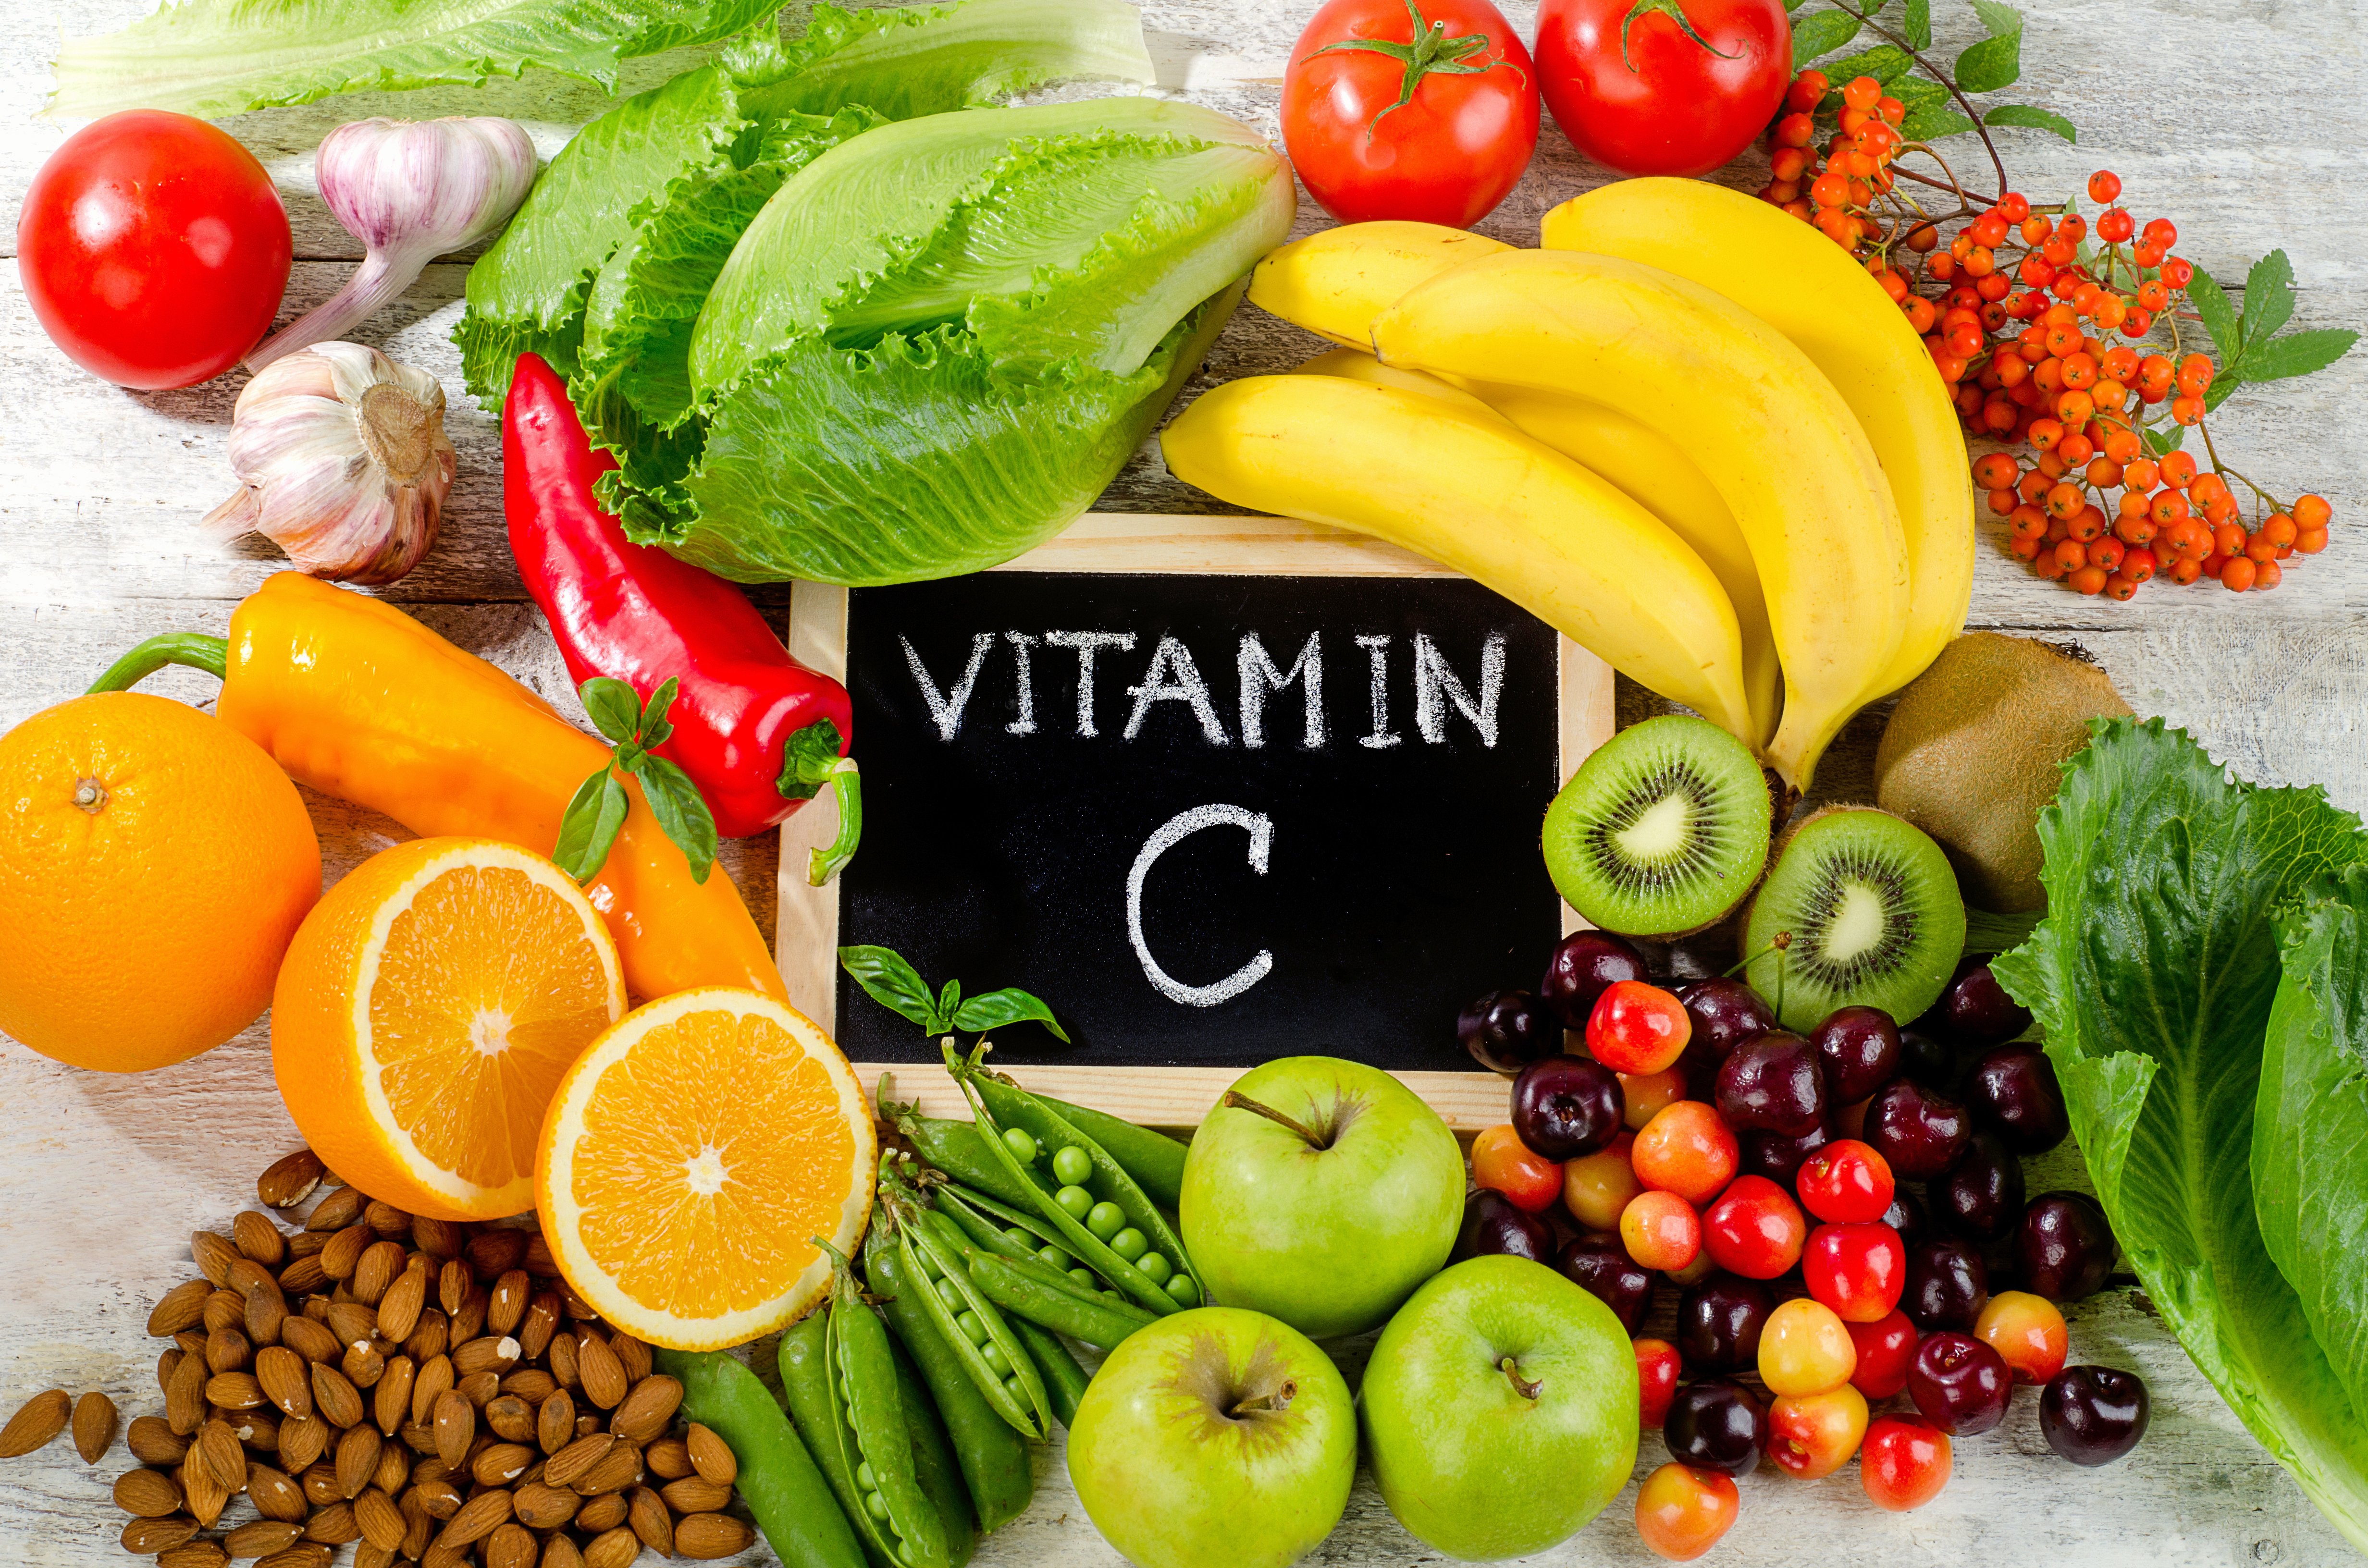 vitamin C supplements online in the UK